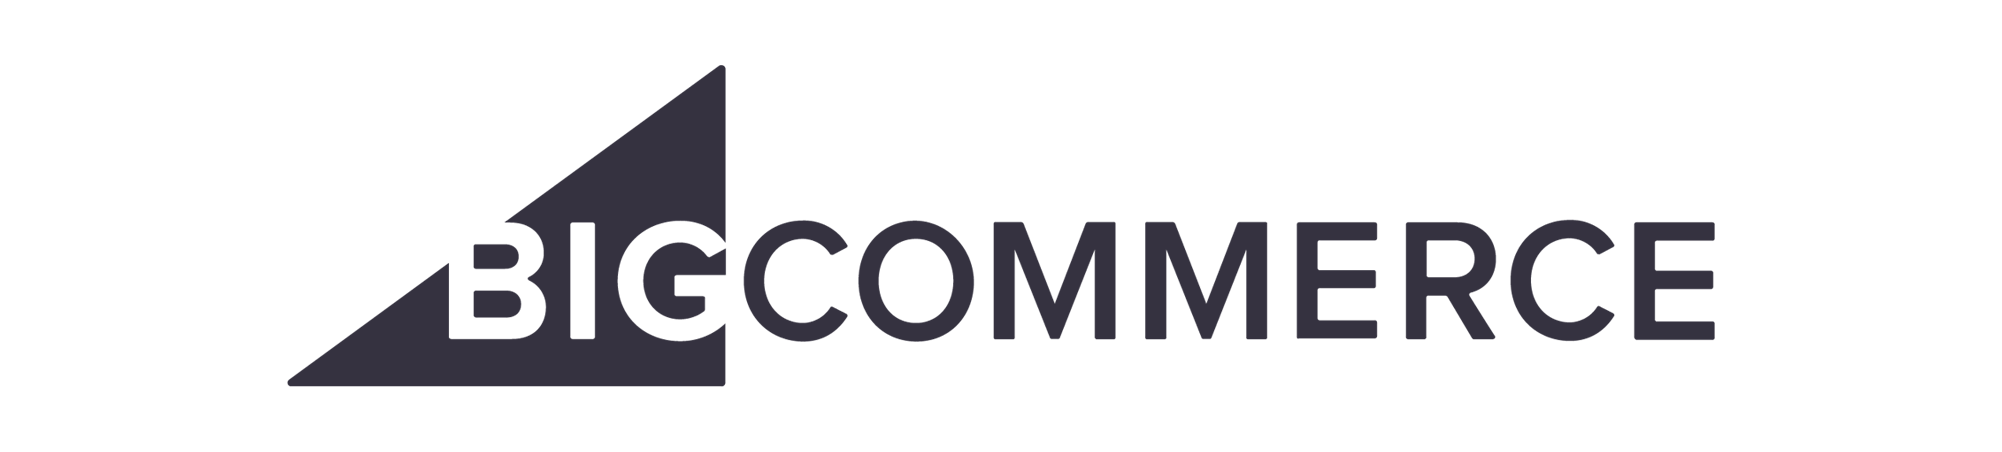 Big Commerce logo1